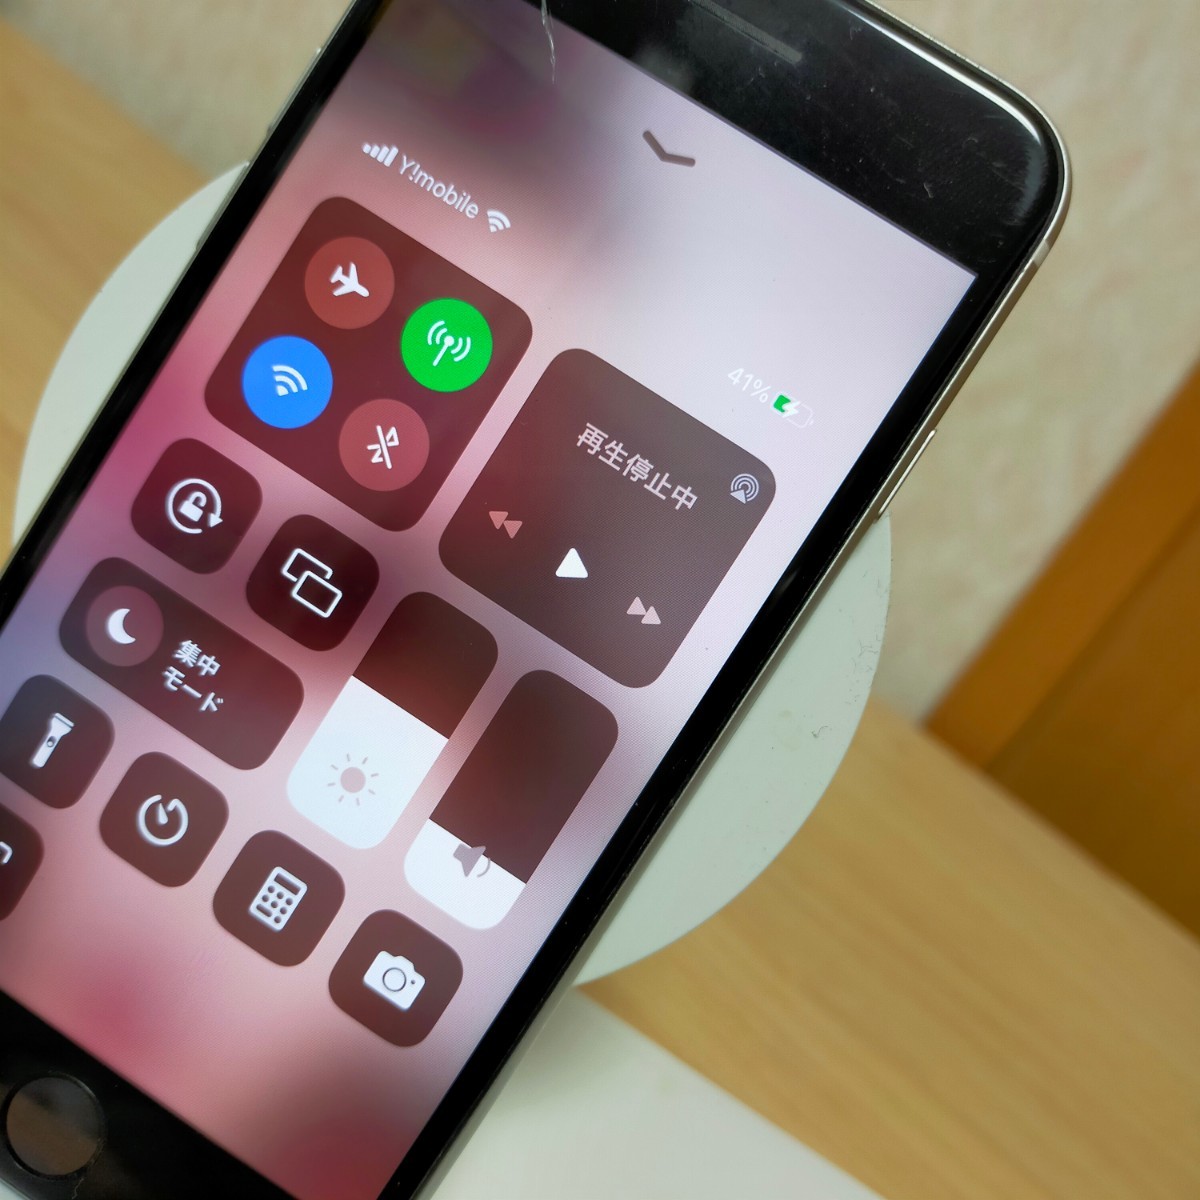 belkin беспроводной зарядное устройство Wireless F8J234 WHITE iPhone Apple Watch рабочее состояние подтверждено 